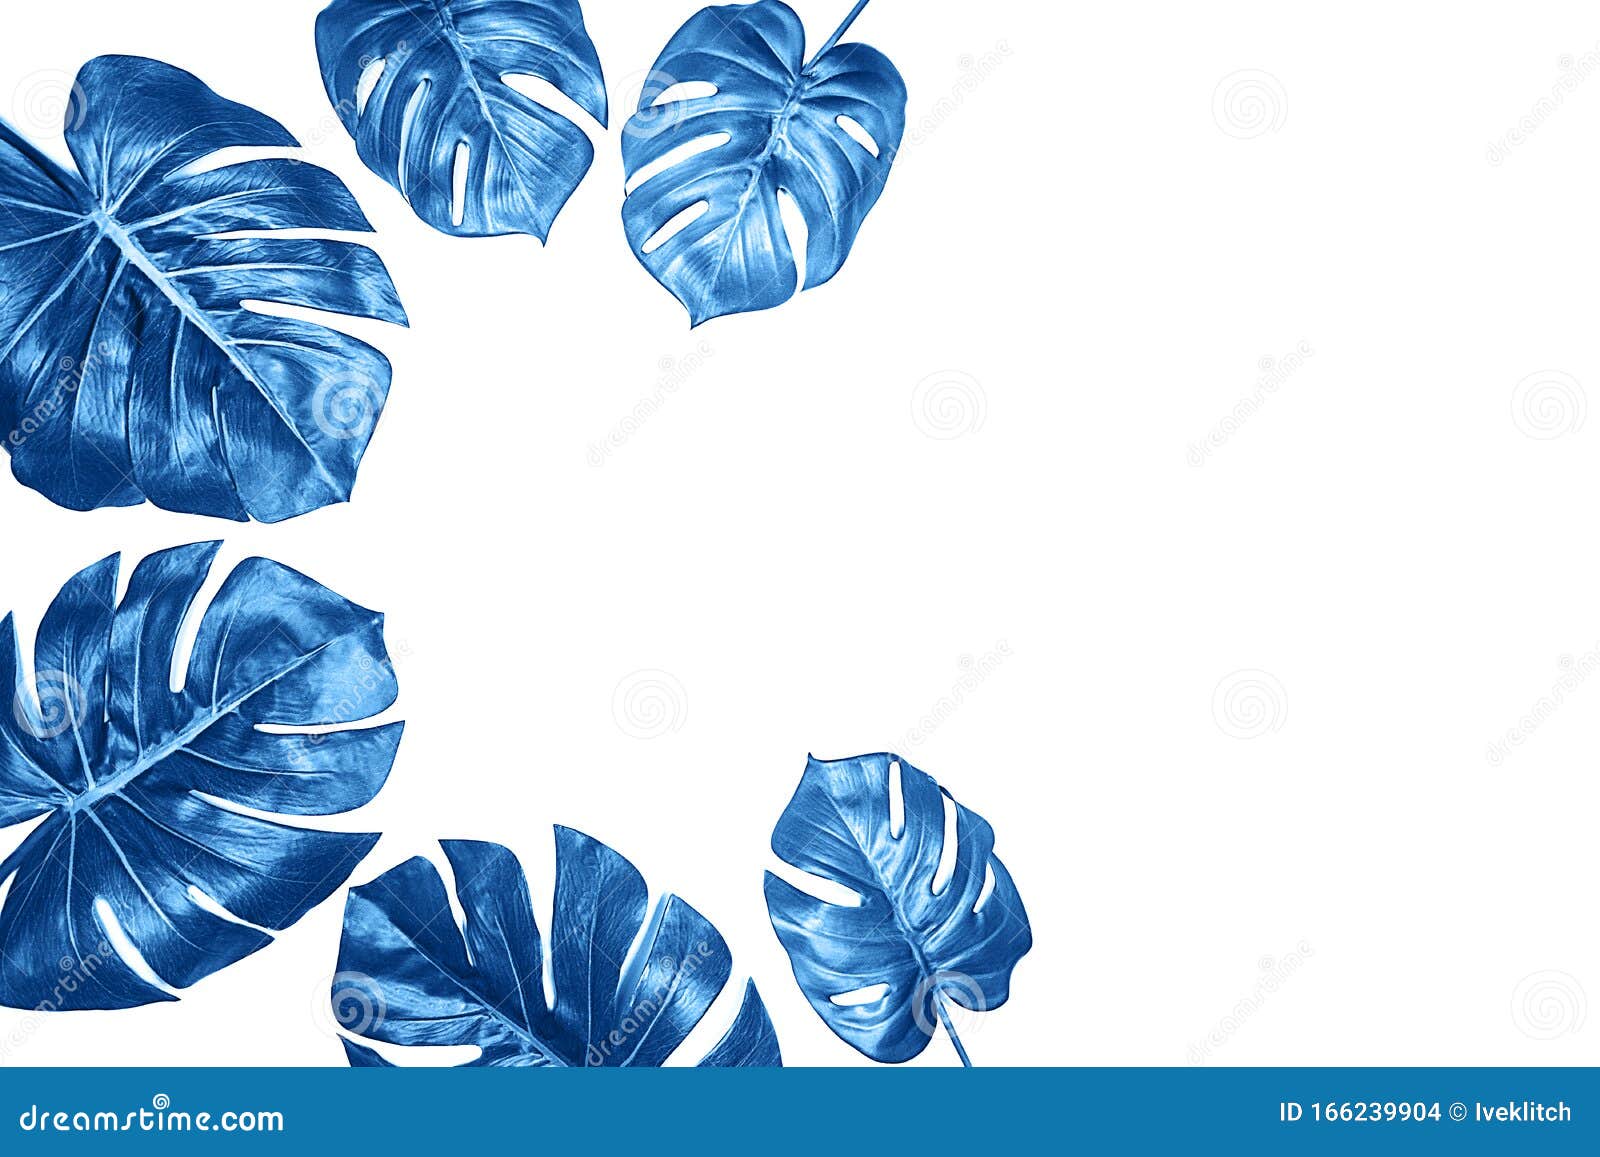 Mẫu hoa lá Monstera xanh trên nền trắng là sự kết hợp tuyệt vời giữa màu sắc và nét độc đáo của loài cây Monstera. Hãy xem hình ảnh để tìm thêm nhiều ý tưởng để tận dụng mẫu hoa lá này và tạo ra những tác phẩm độc đáo và ấn tượng hơn bao giờ hết.